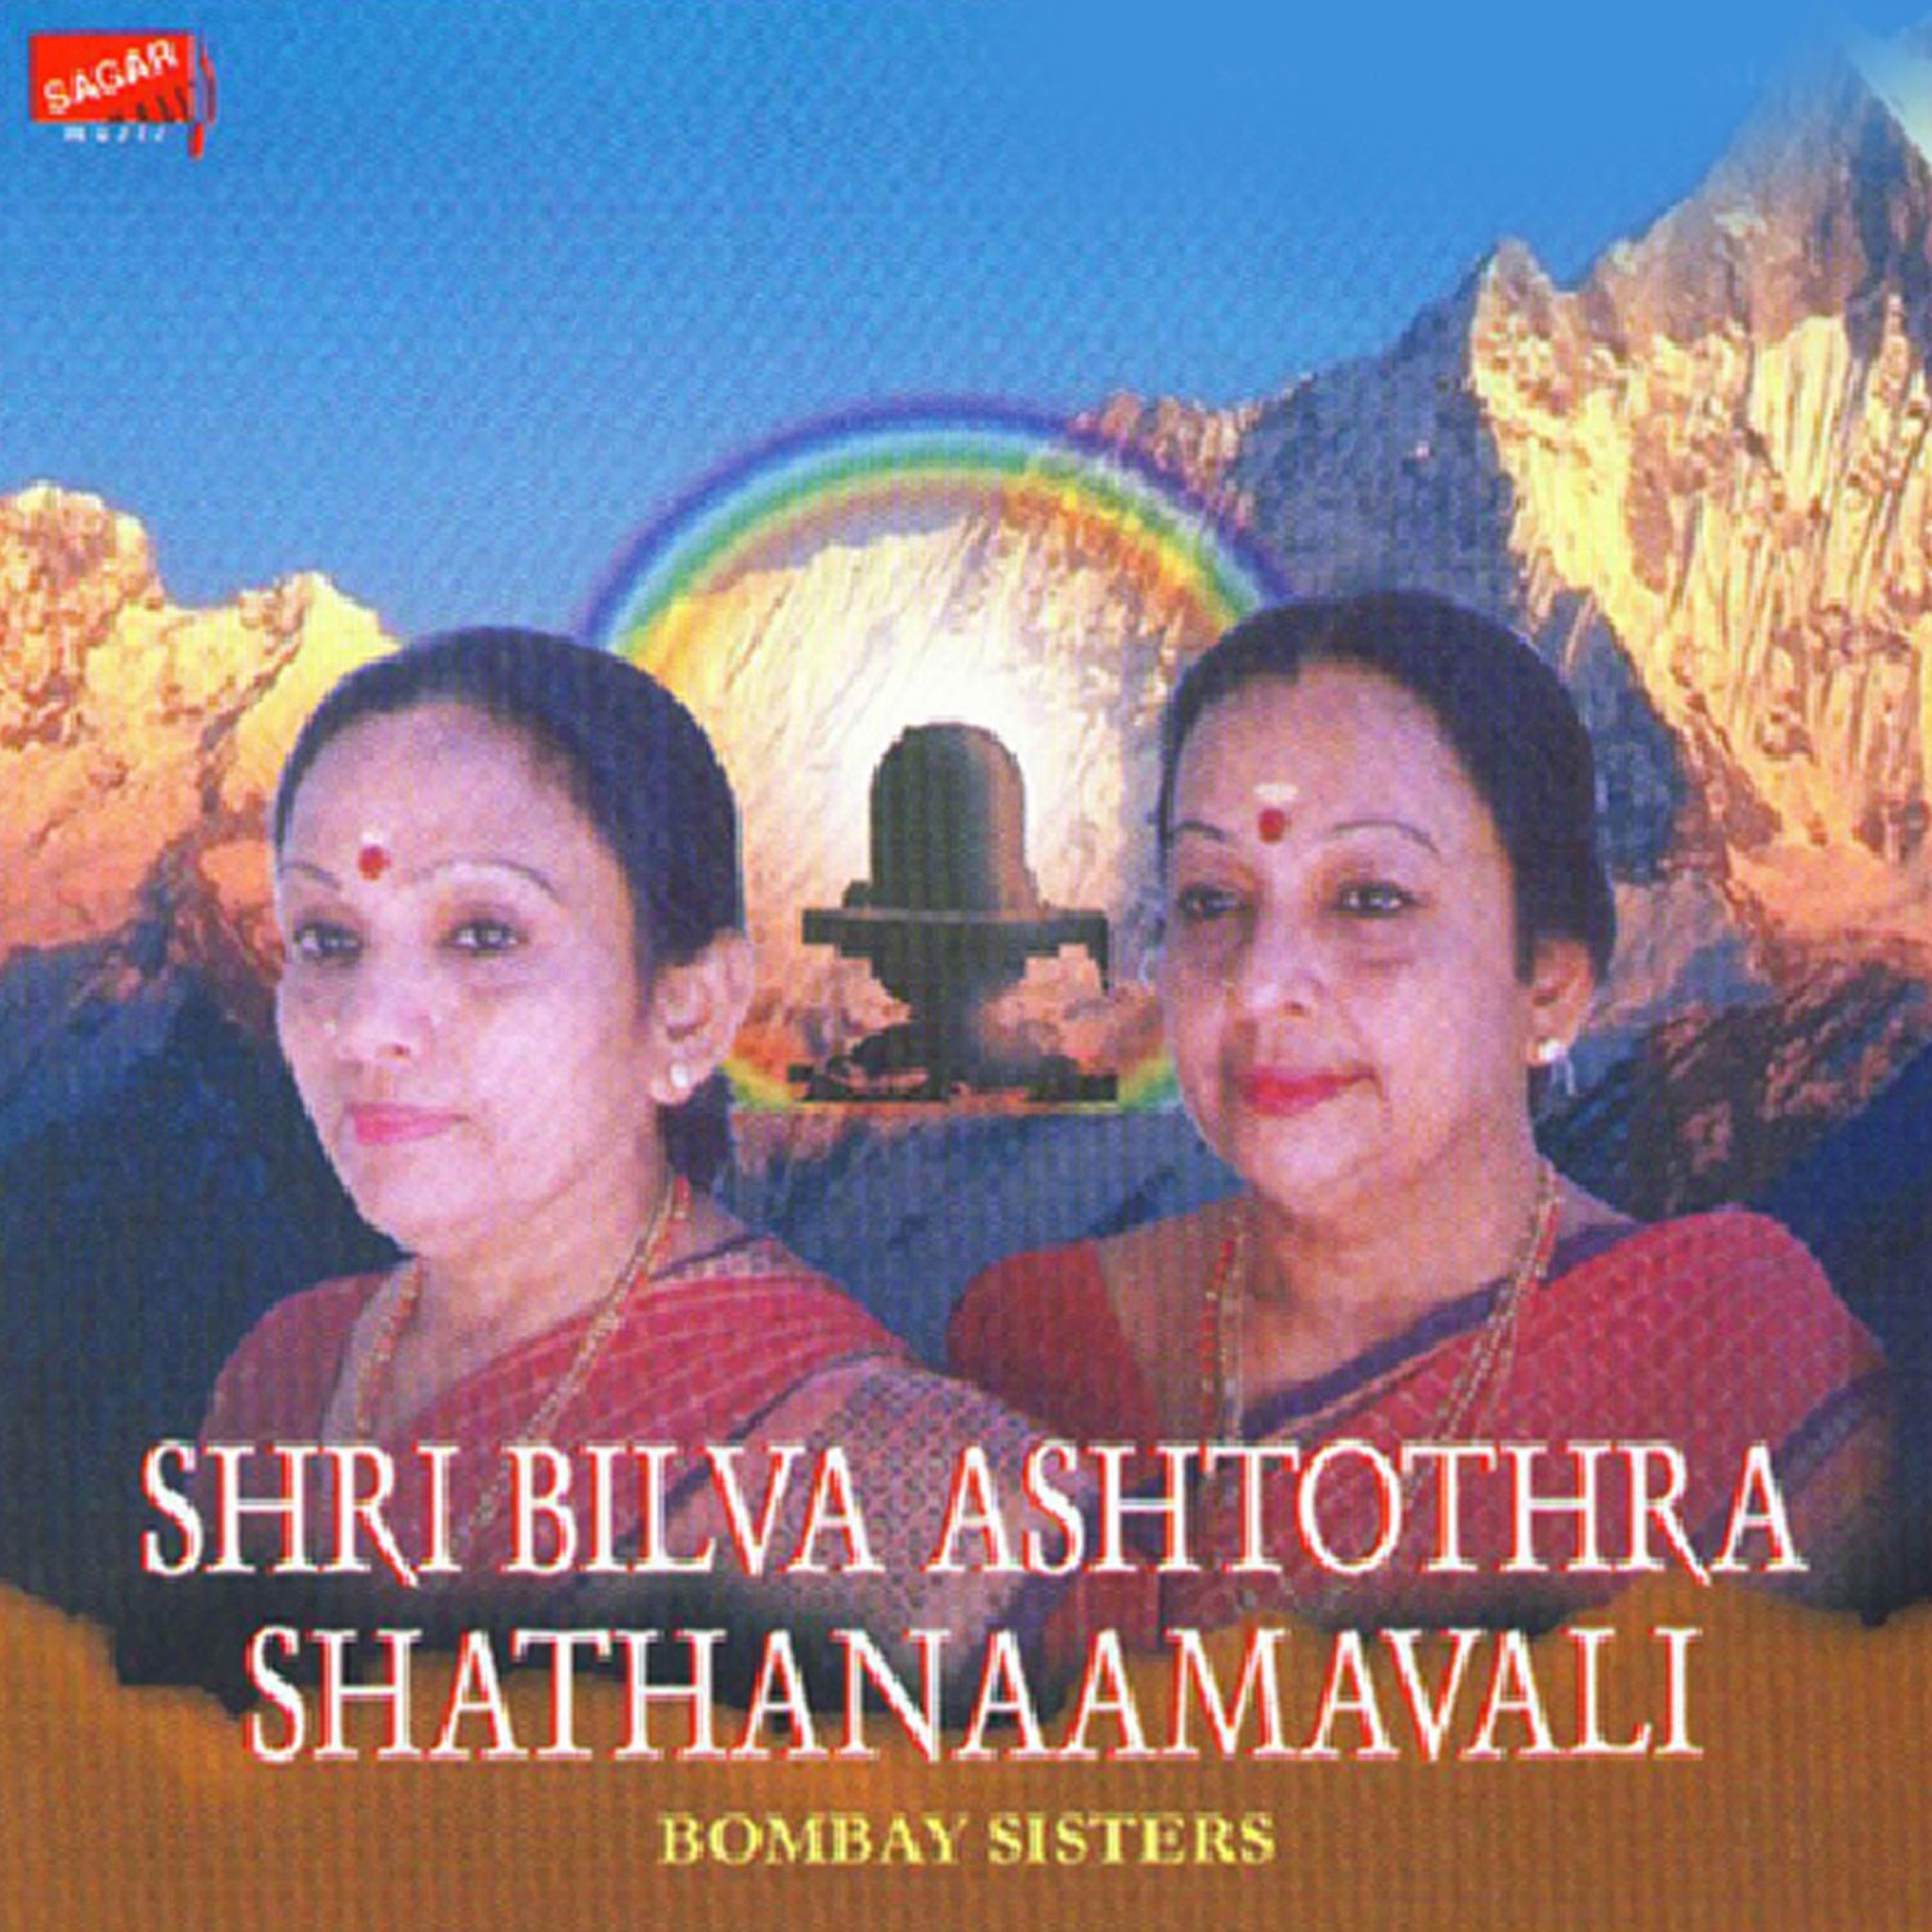 Shri Shiva Sthothram